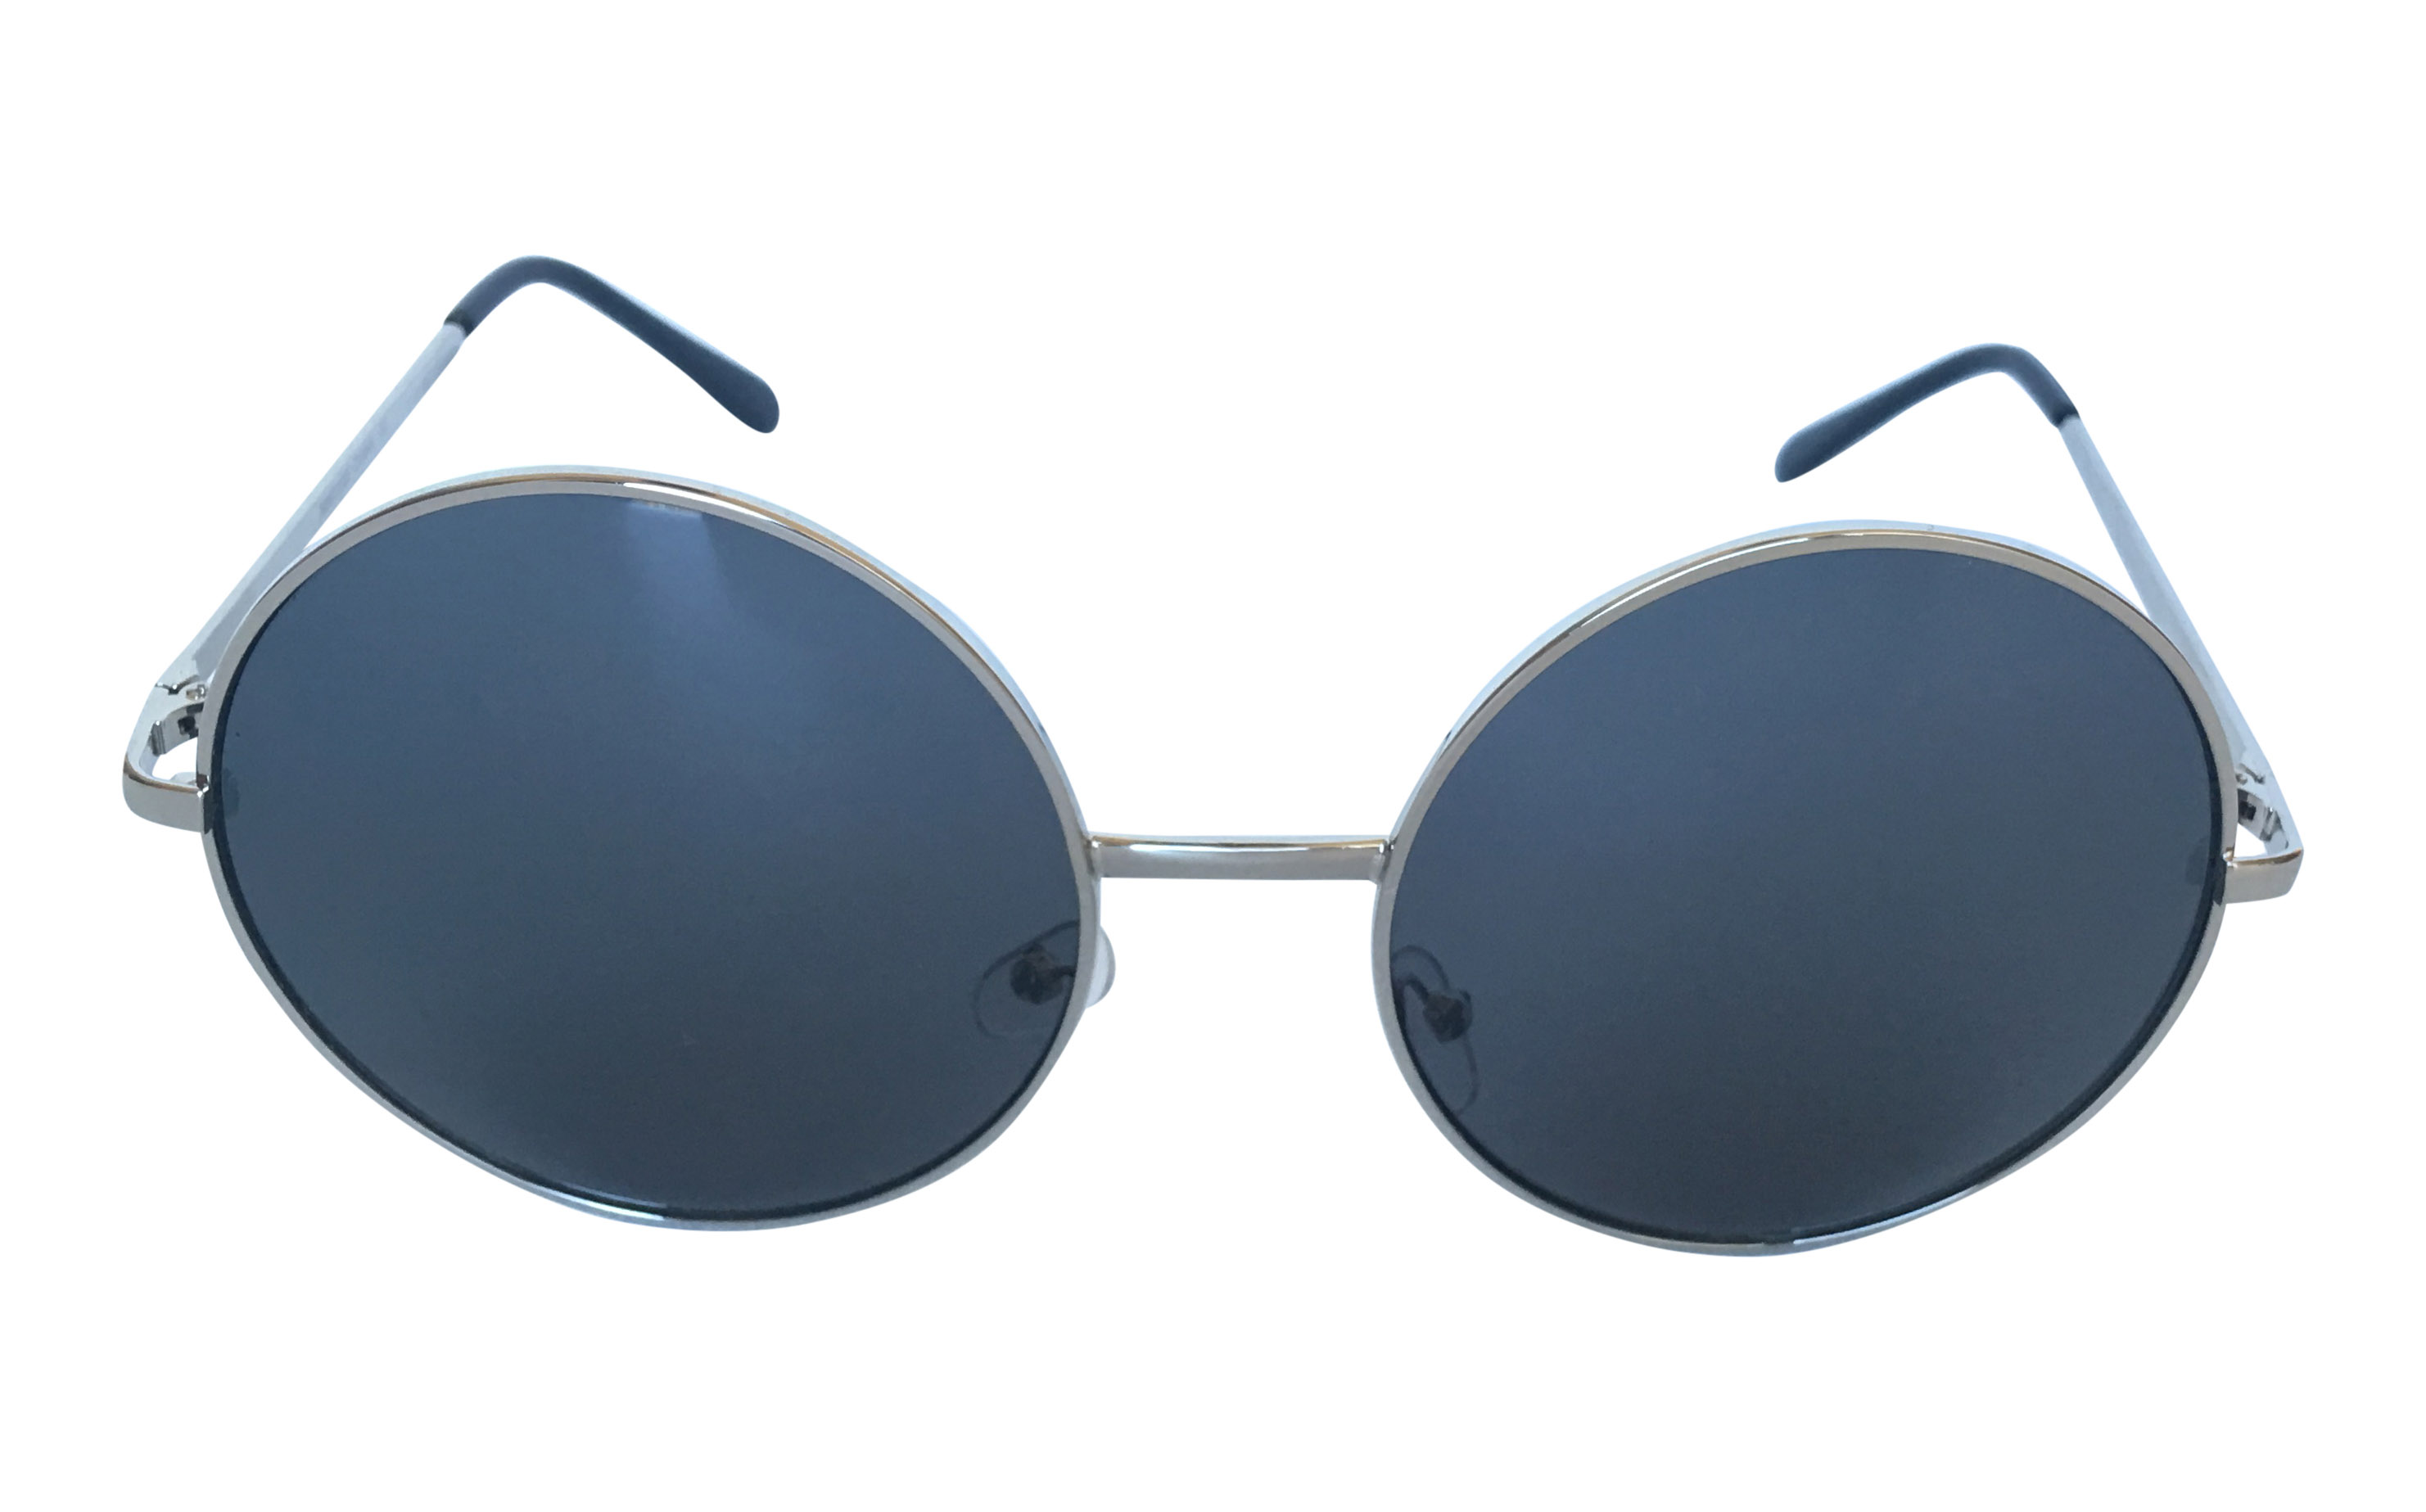 Stor sølvfarvet lennon solbrille - Design nr. 3307